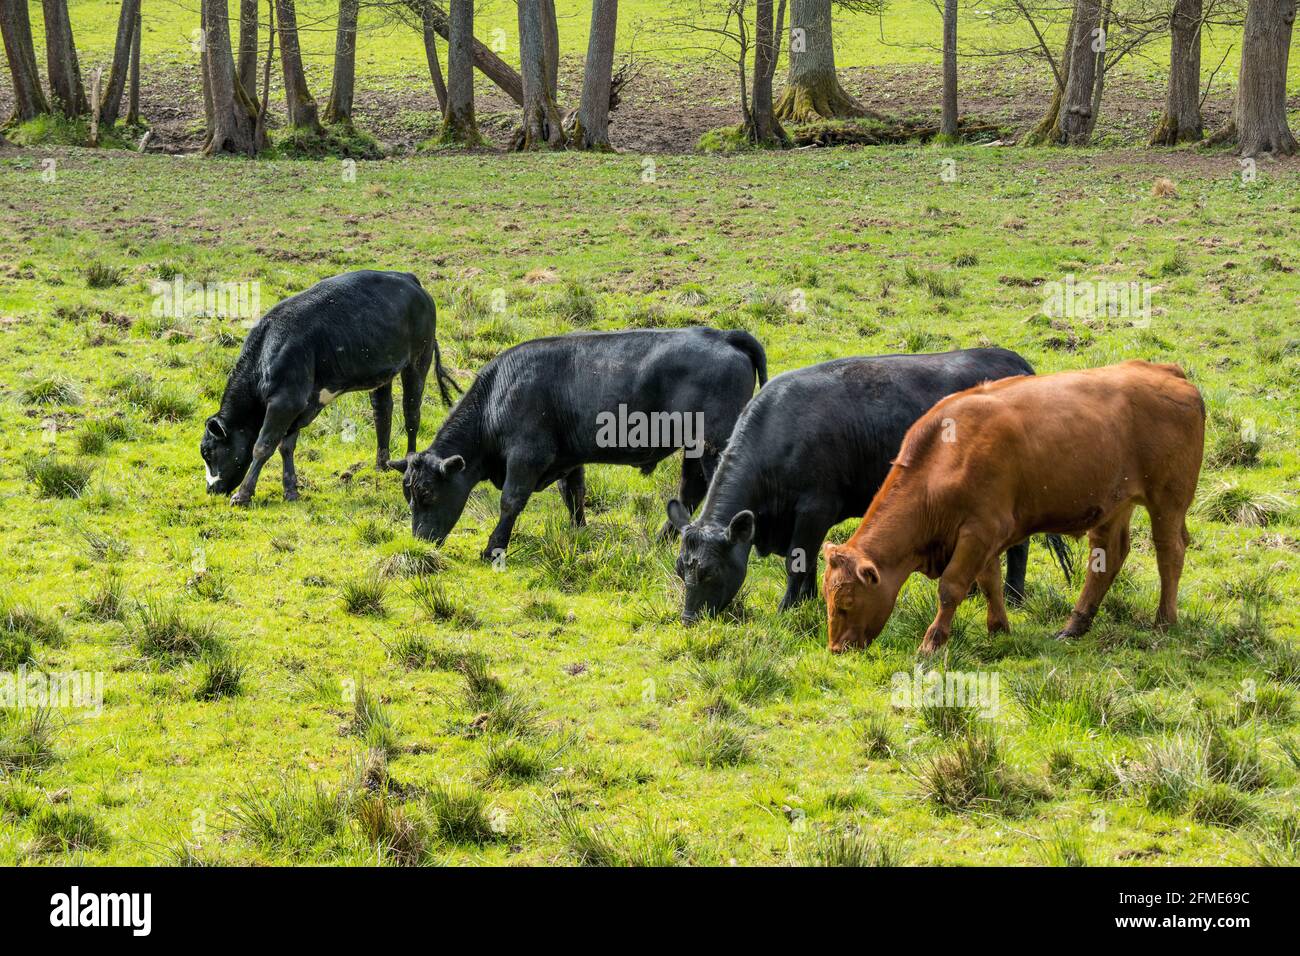 se permite que las vacas felices crezcan en un ambiente natural, apropiado para las especies, en el bienestar de los animales Foto de stock